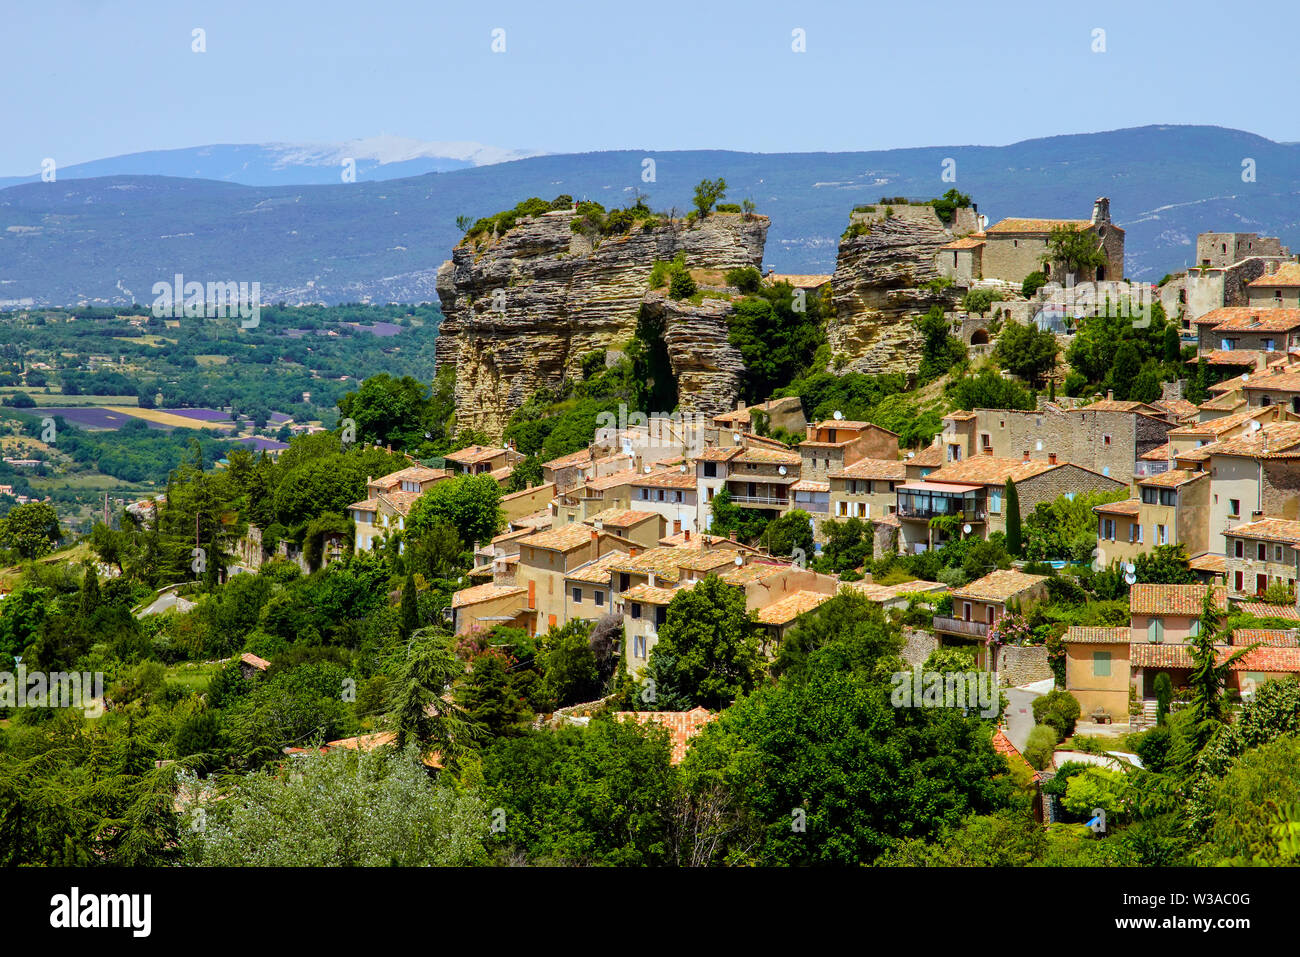 Vue sur le village de Saignon situé sur le rocher dans les montagnes du Luberon, Vaucluse, Provence, France. Banque D'Images